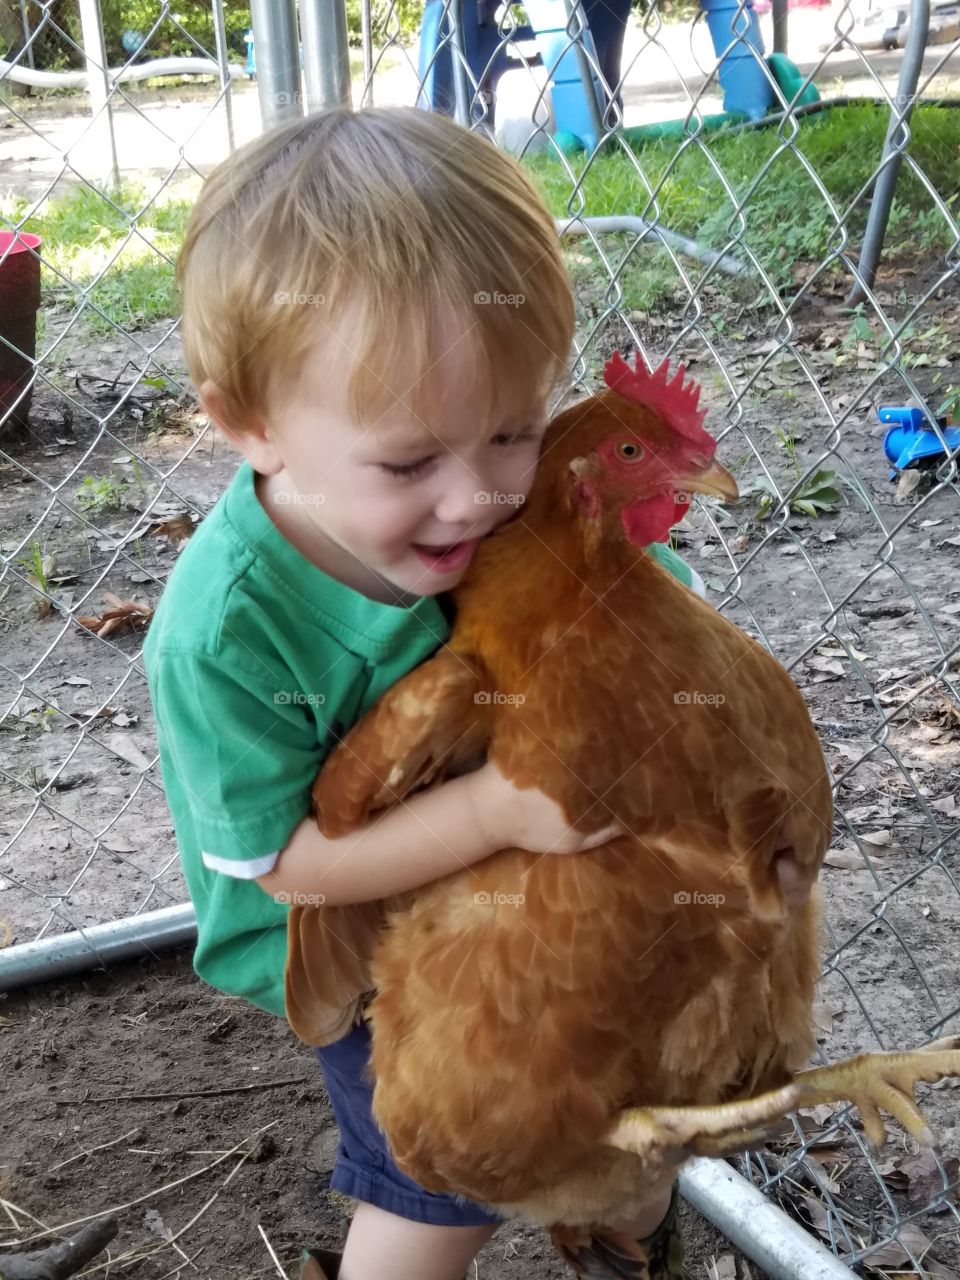 chicken love